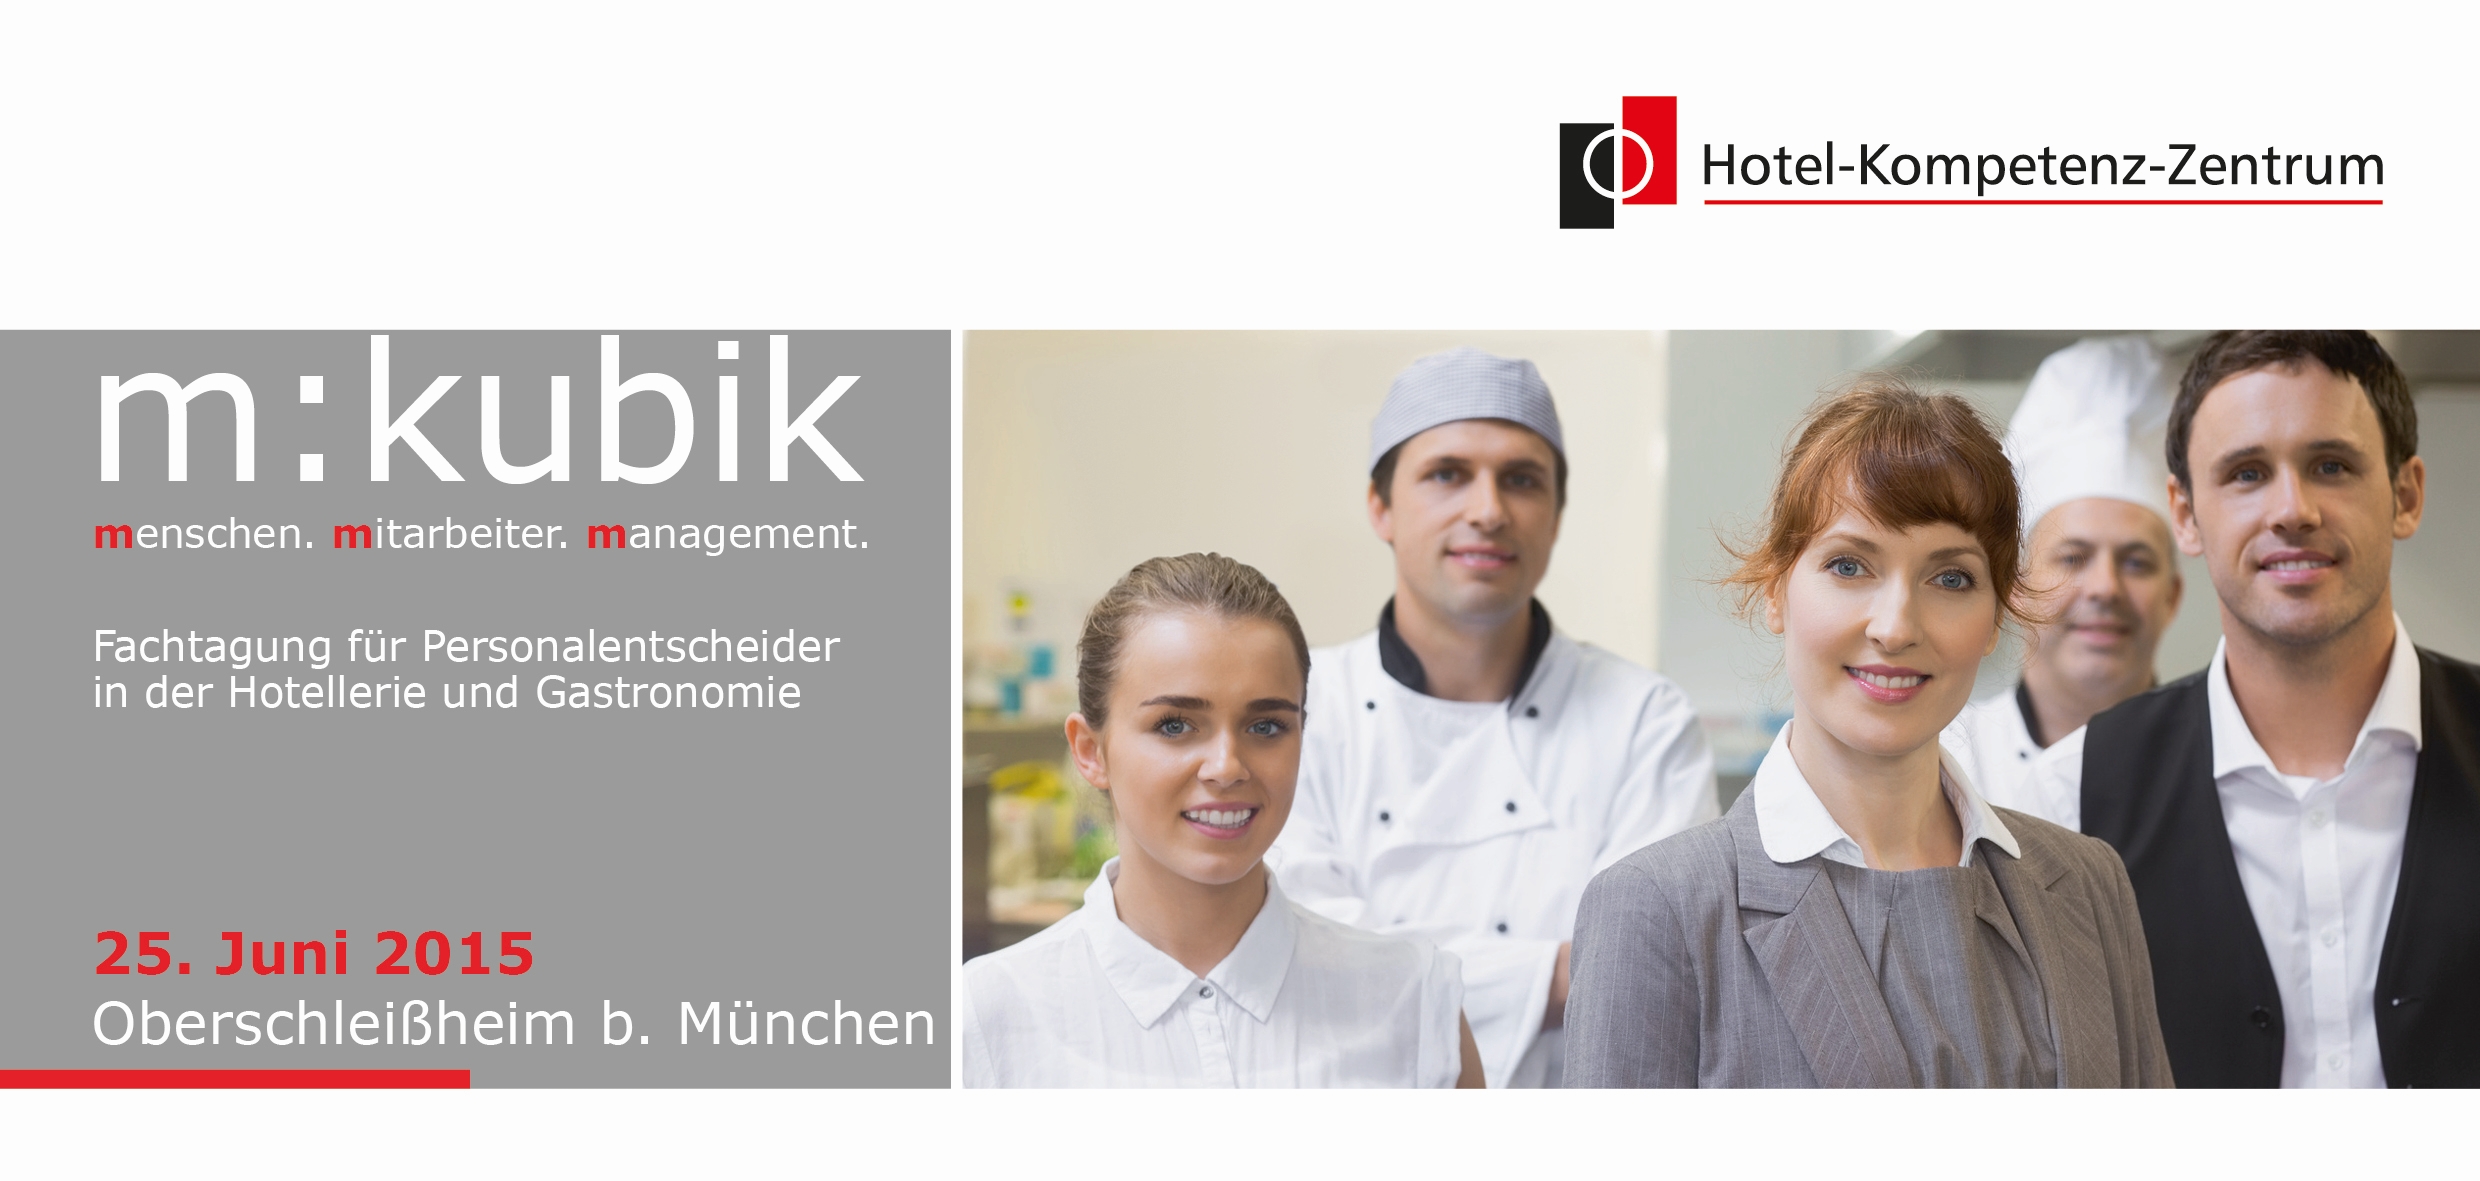 Innovatives Personalmanagement gestaltet Zukunft - Fachtagung für Personalentscheider und HR-Manager in Hotellerie und Gastronomie am 25. Juni 2015 im Hotelkompetenzzentrum